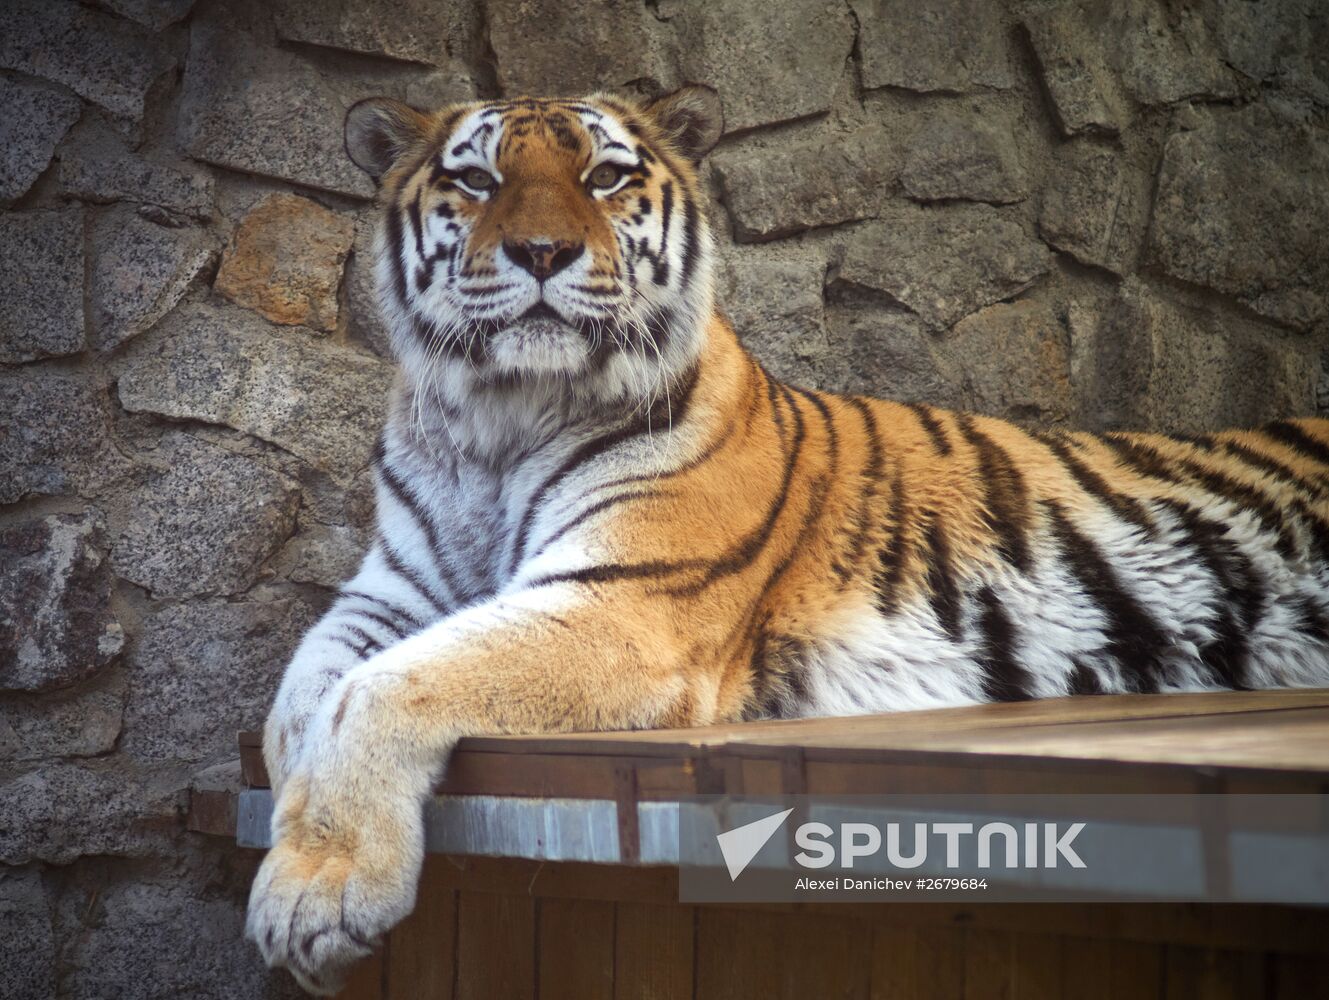 Leningrad Zoo celebrates its 150th anniversary